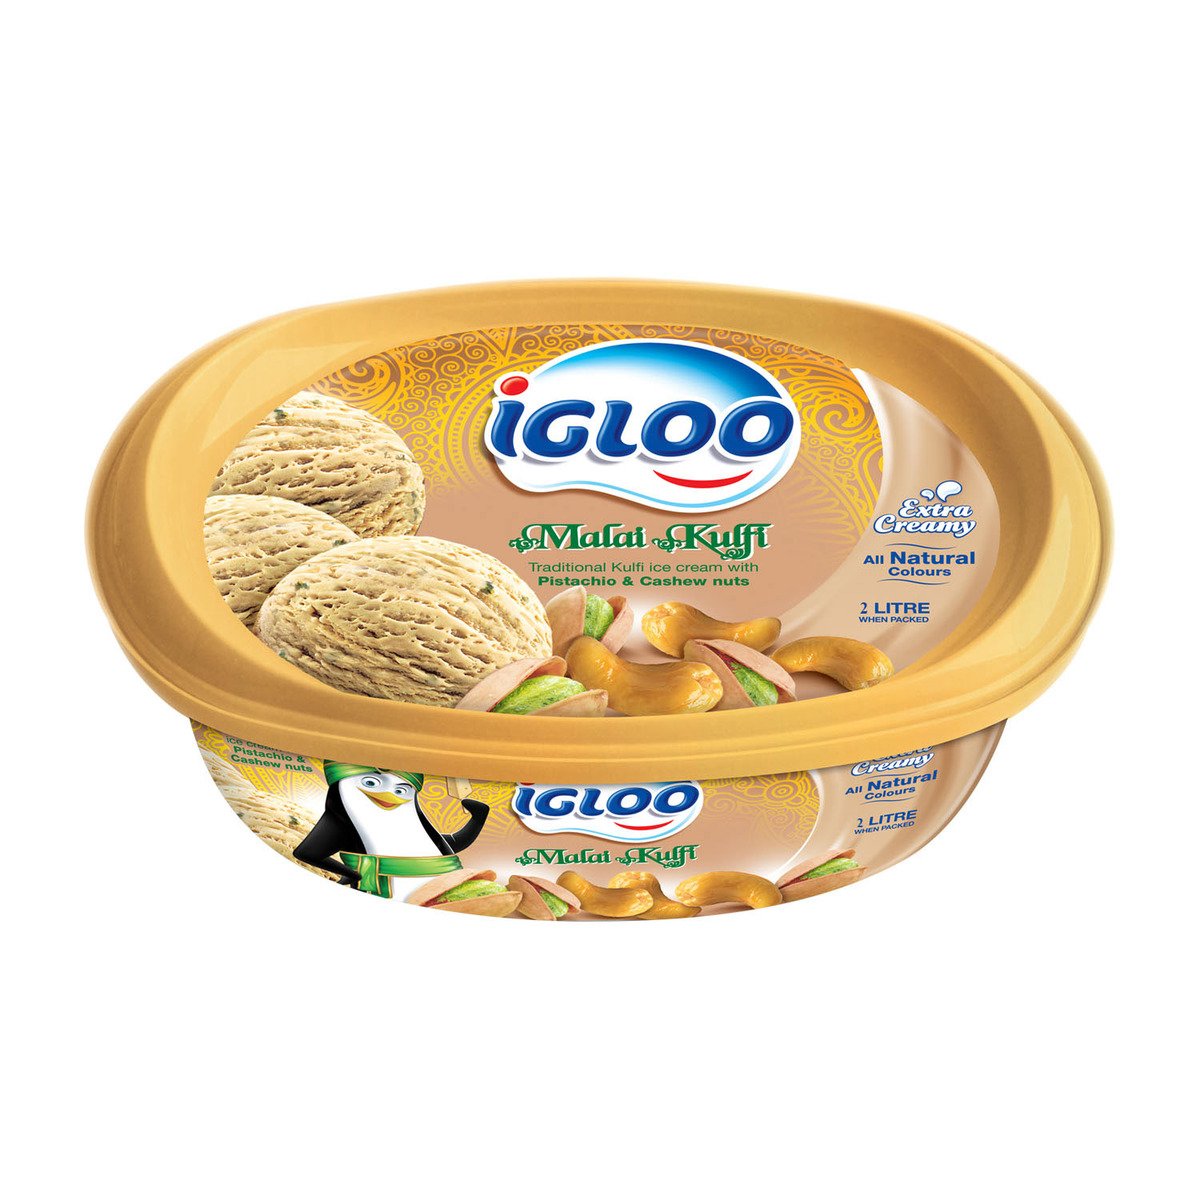 اشتري قم بشراء آيس كريم إيجلو مالاي كولفي بالفستق والكاجو 2 لتر Online at Best Price من الموقع - من لولو هايبر ماركت Ice Cream Take Home في الكويت